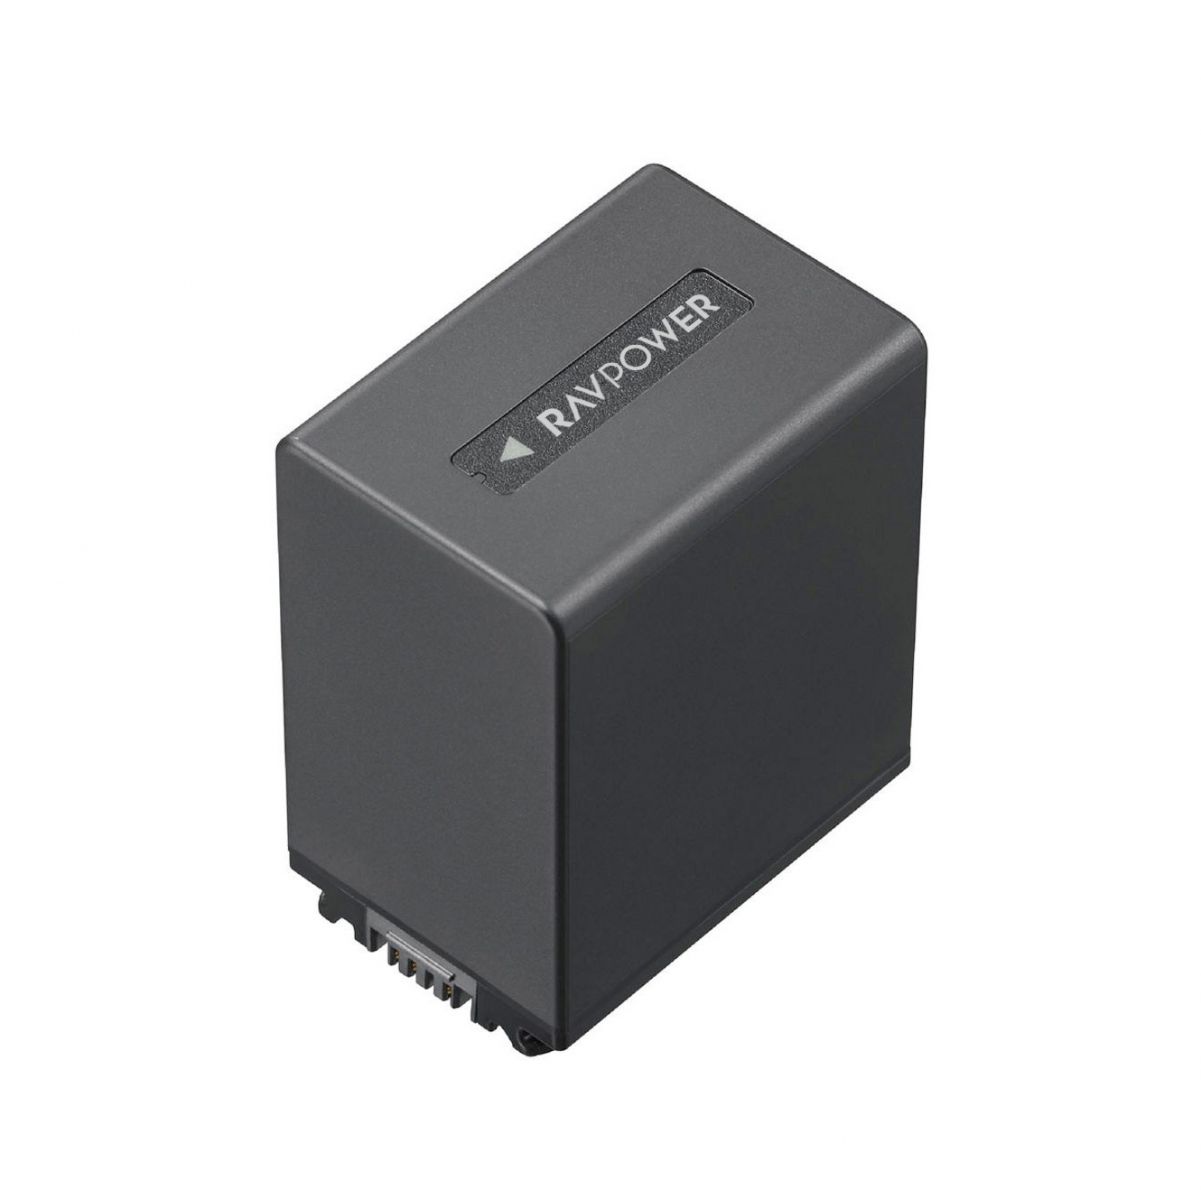 Bộ pin sạc RAVPower NP-FV100A cho Sony NEX, HXR, DEV, HDR, DCR, FDR (Hàng chính hãng)